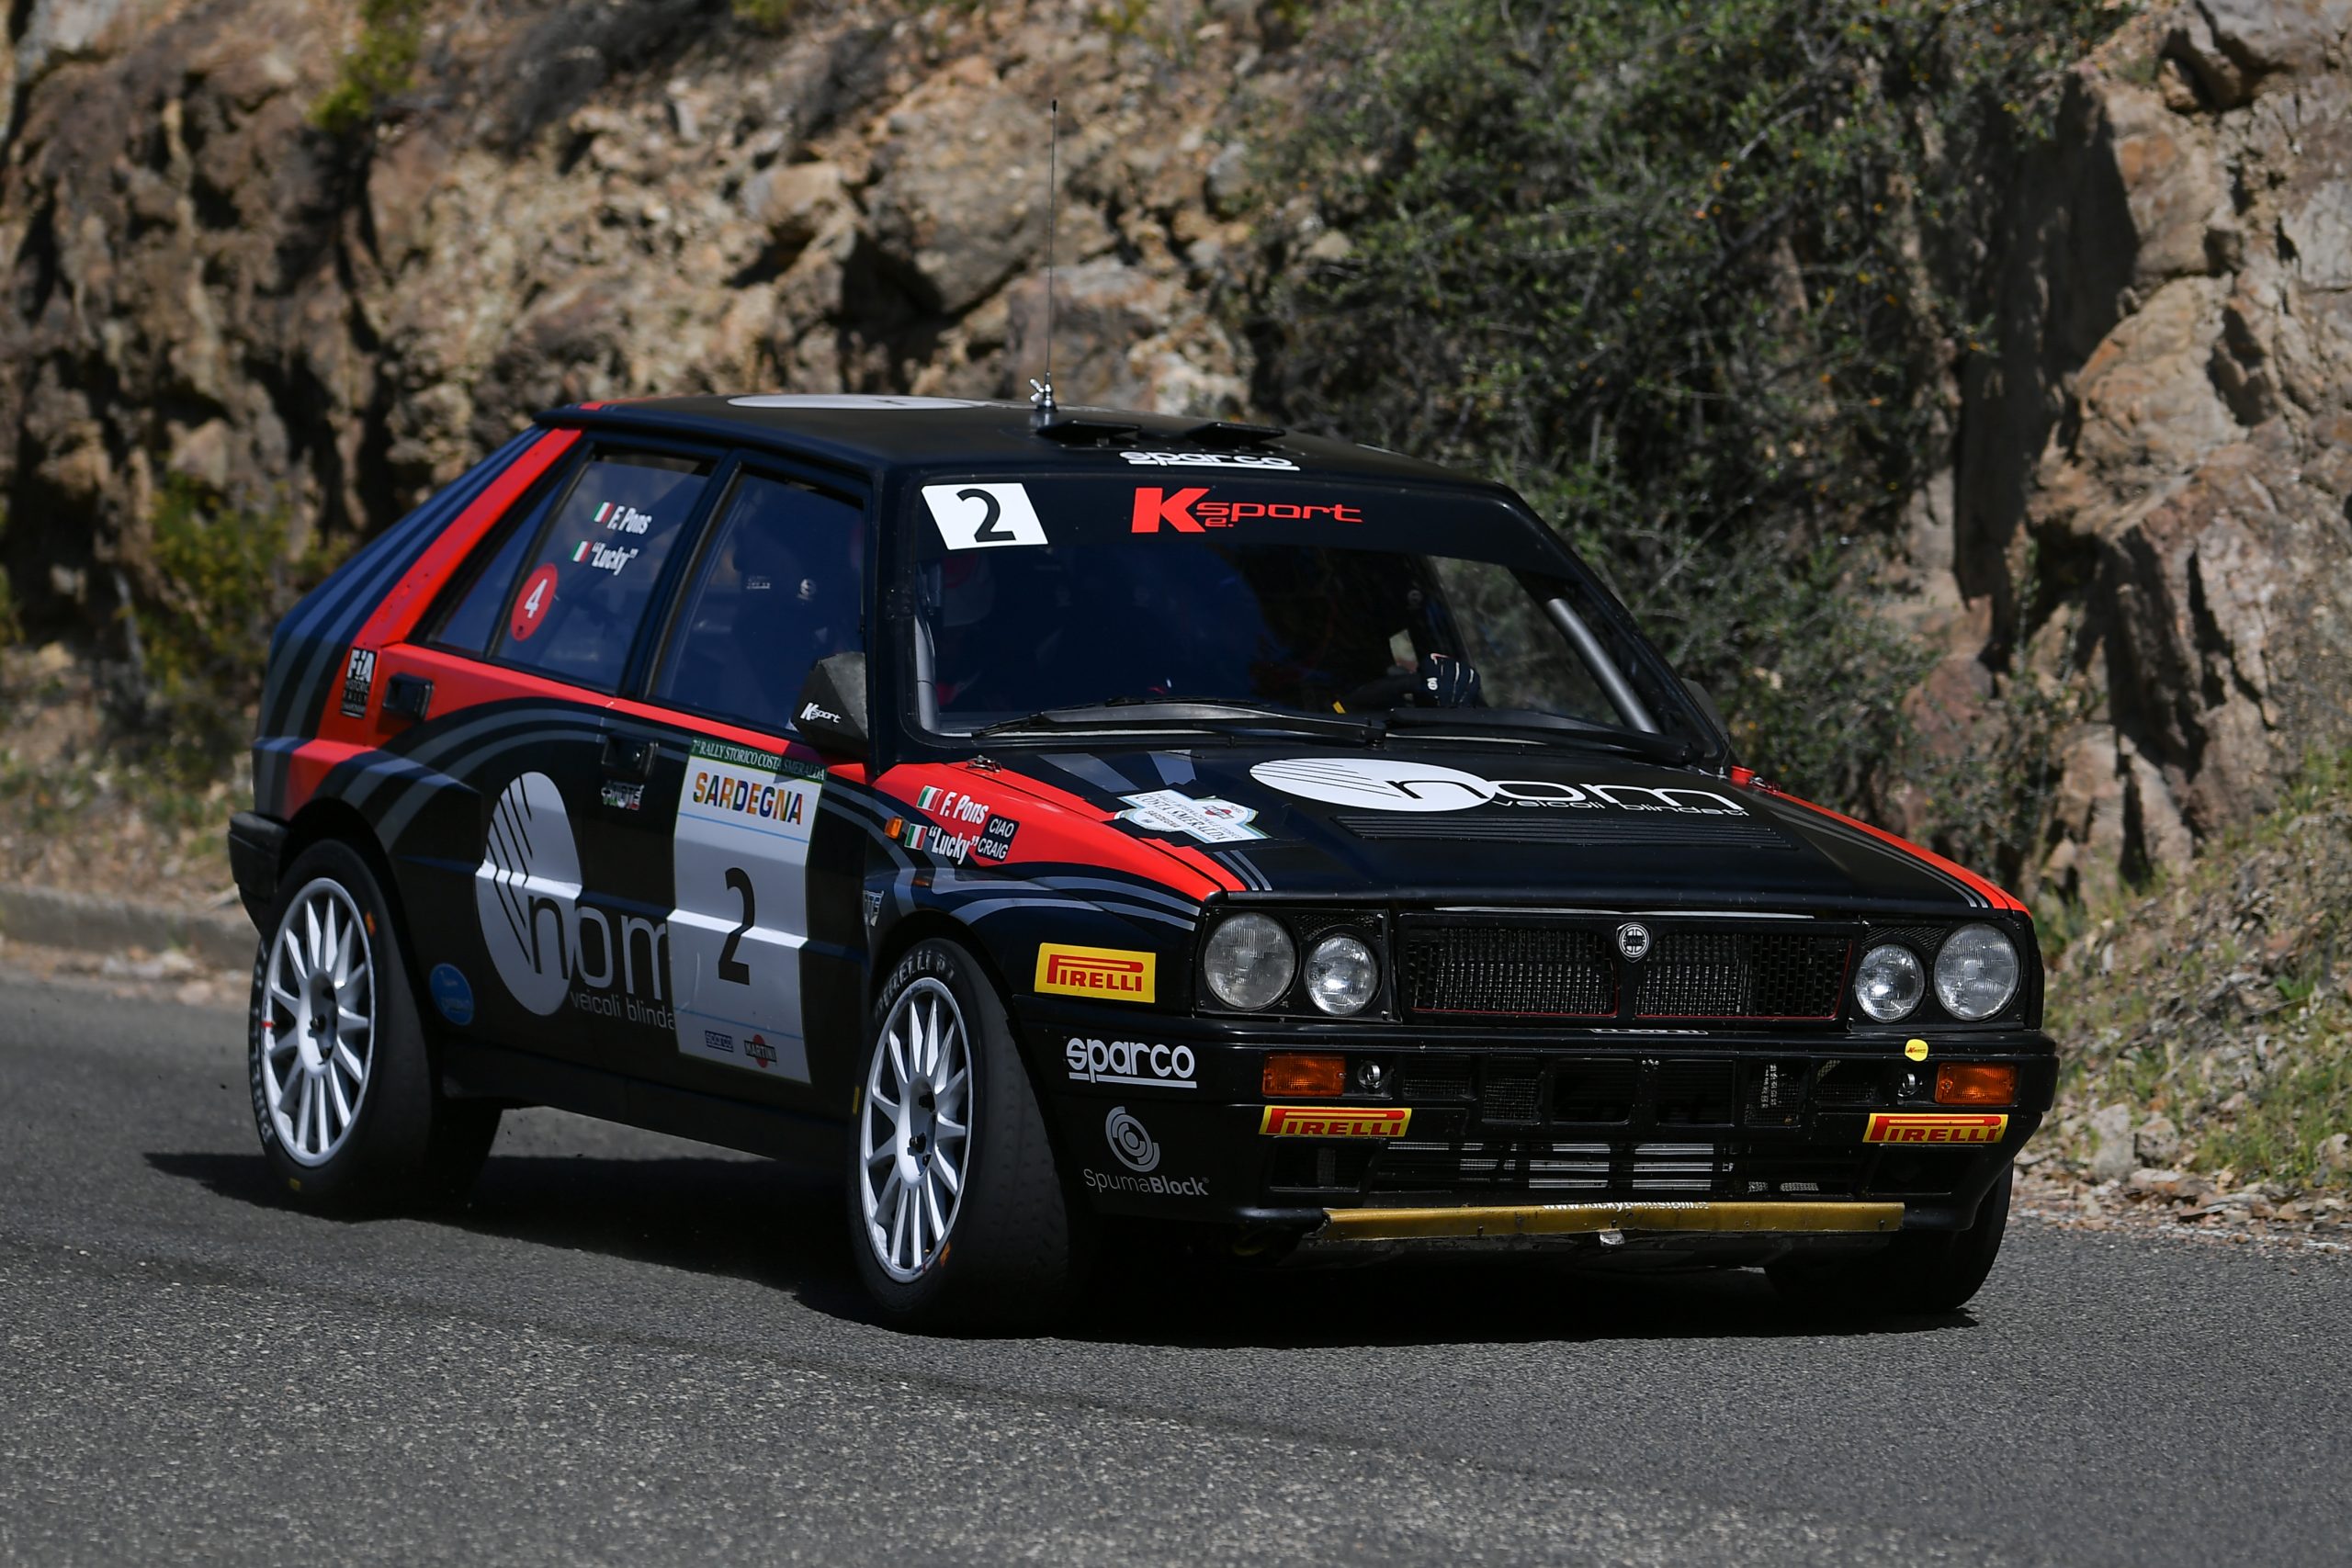 Luky e Pons trionfano nel 7° Rally Internazionale Storico Costa Smeralda.